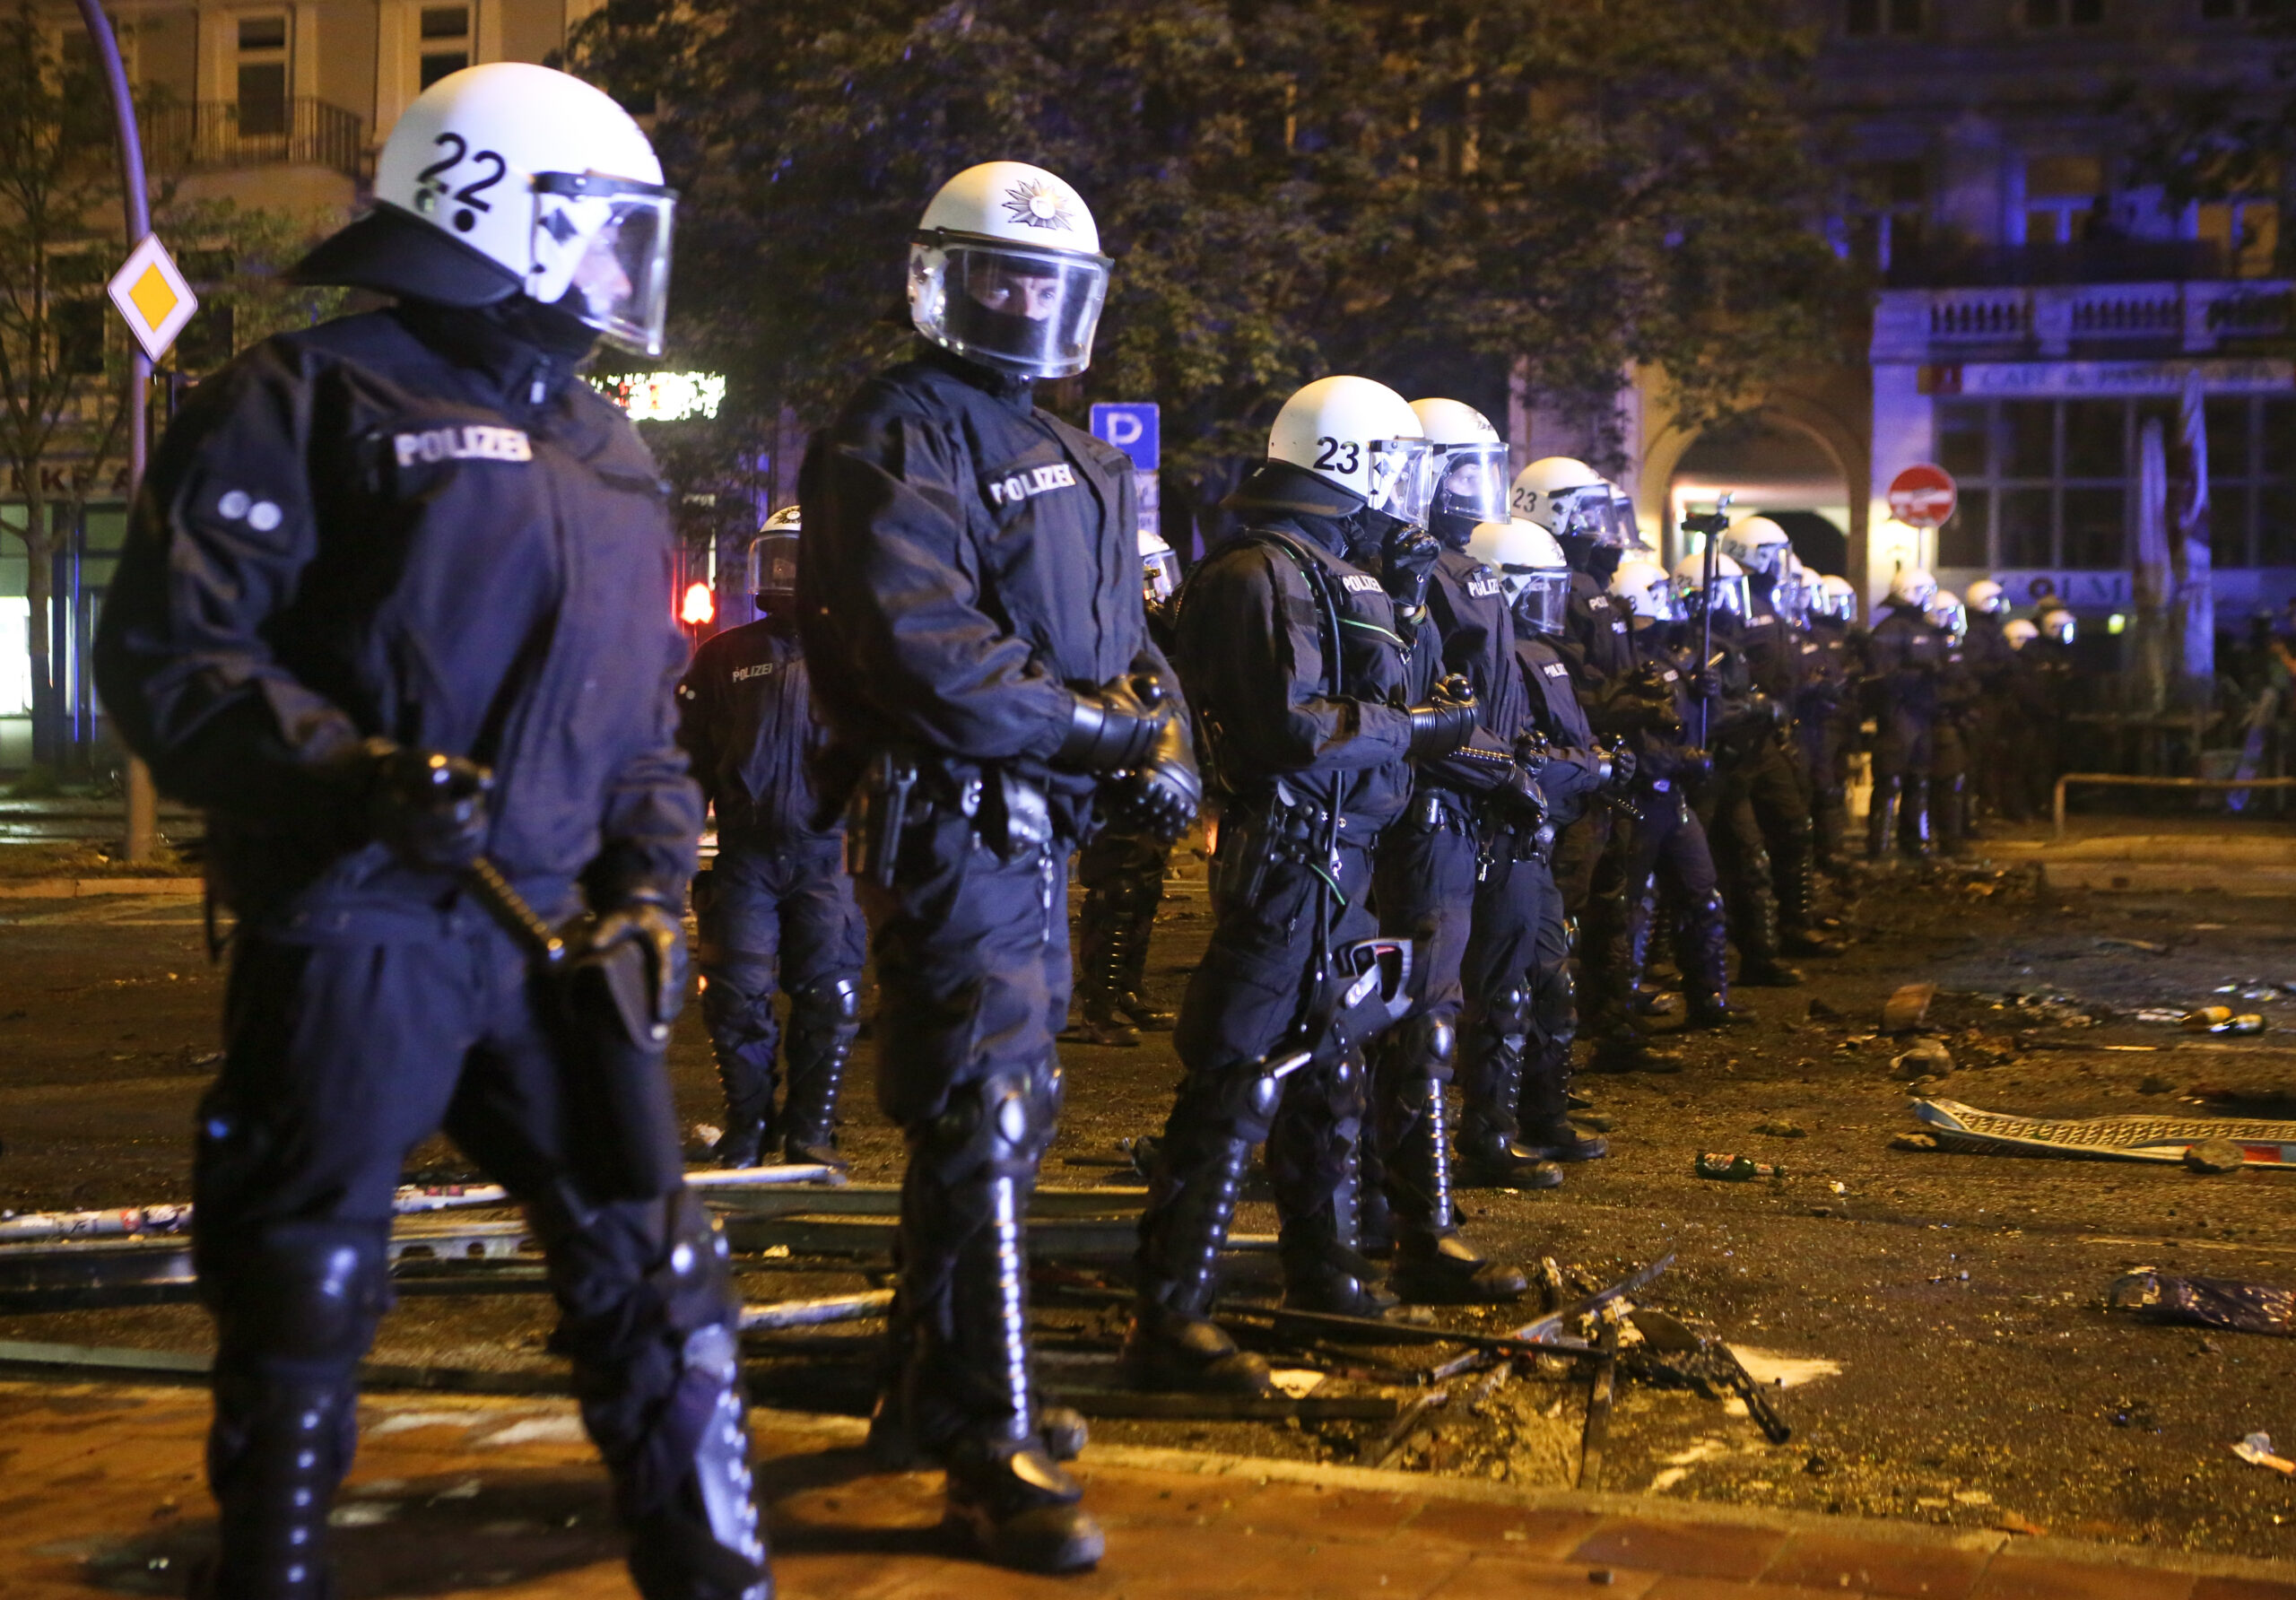 Polizisten stehen beim G20-Gipfel m Schanzenviertel. Noch vier Jahre später erhitzt die Debatte um mögliche Polizeigewalt die Gemüter.